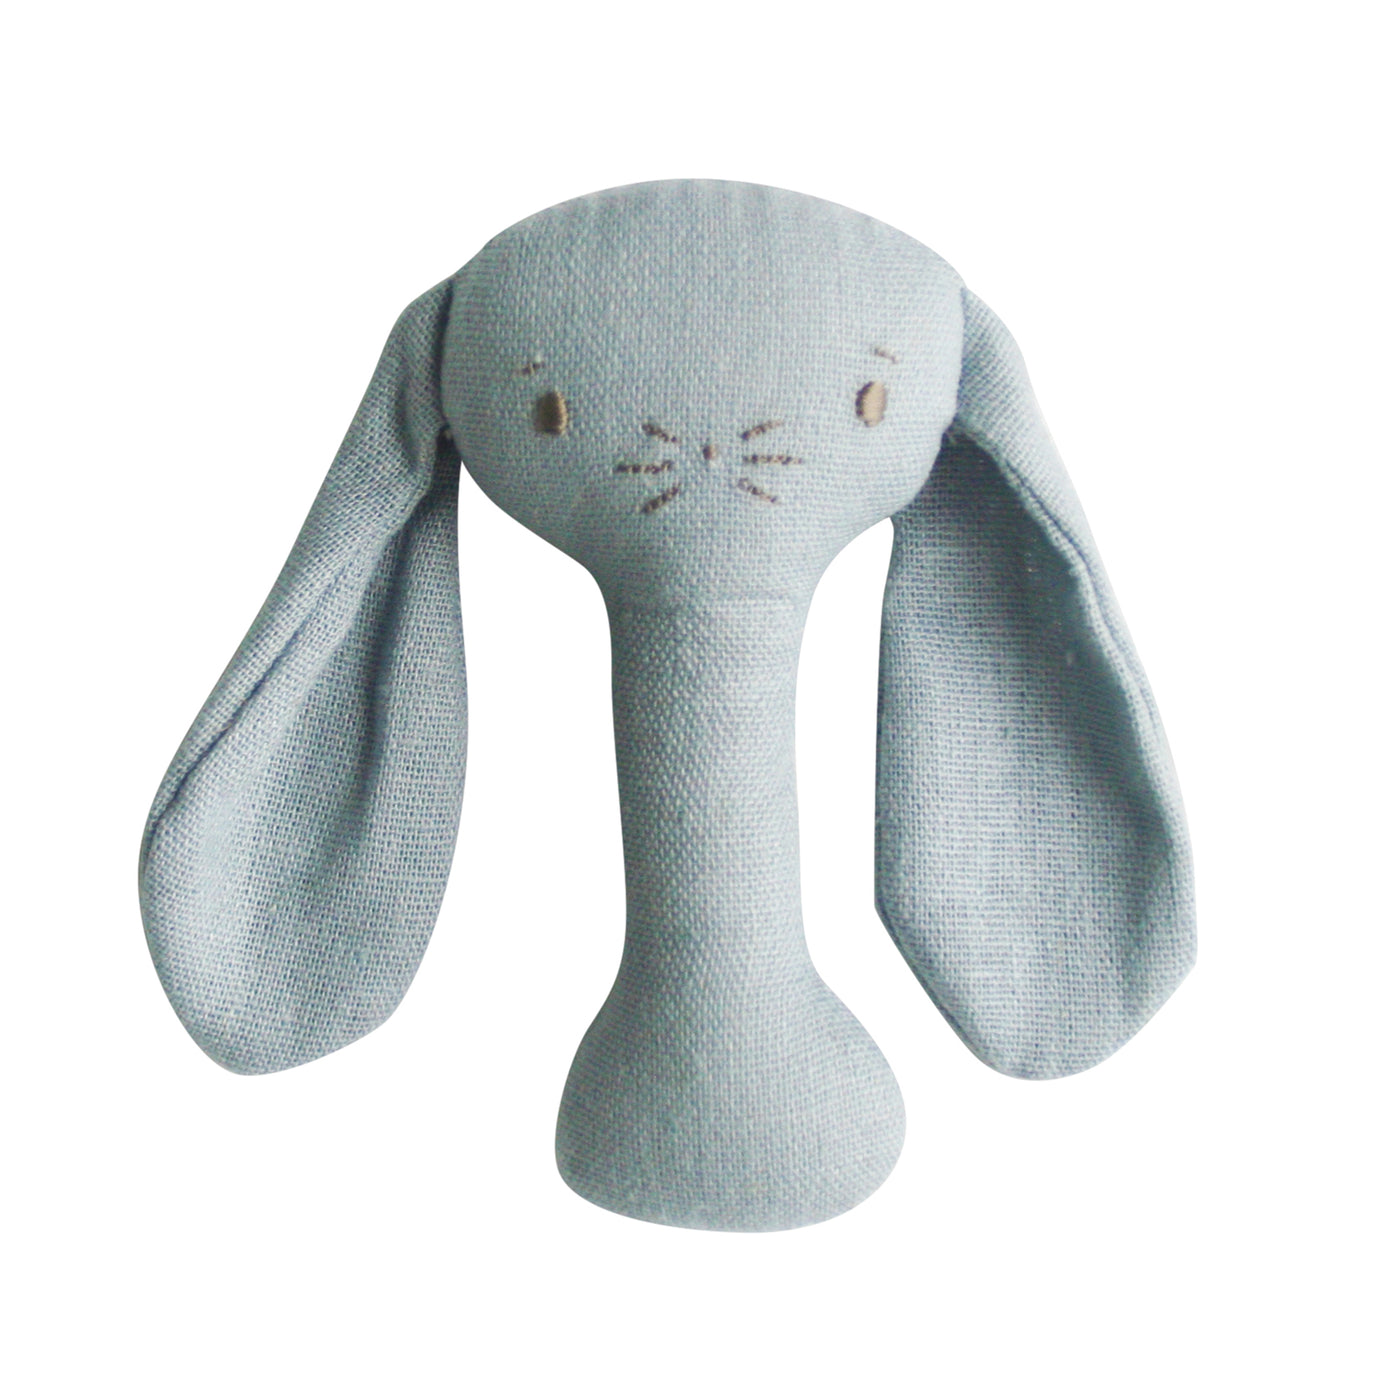 Grey bobby bunny stick rattle by Alimrose